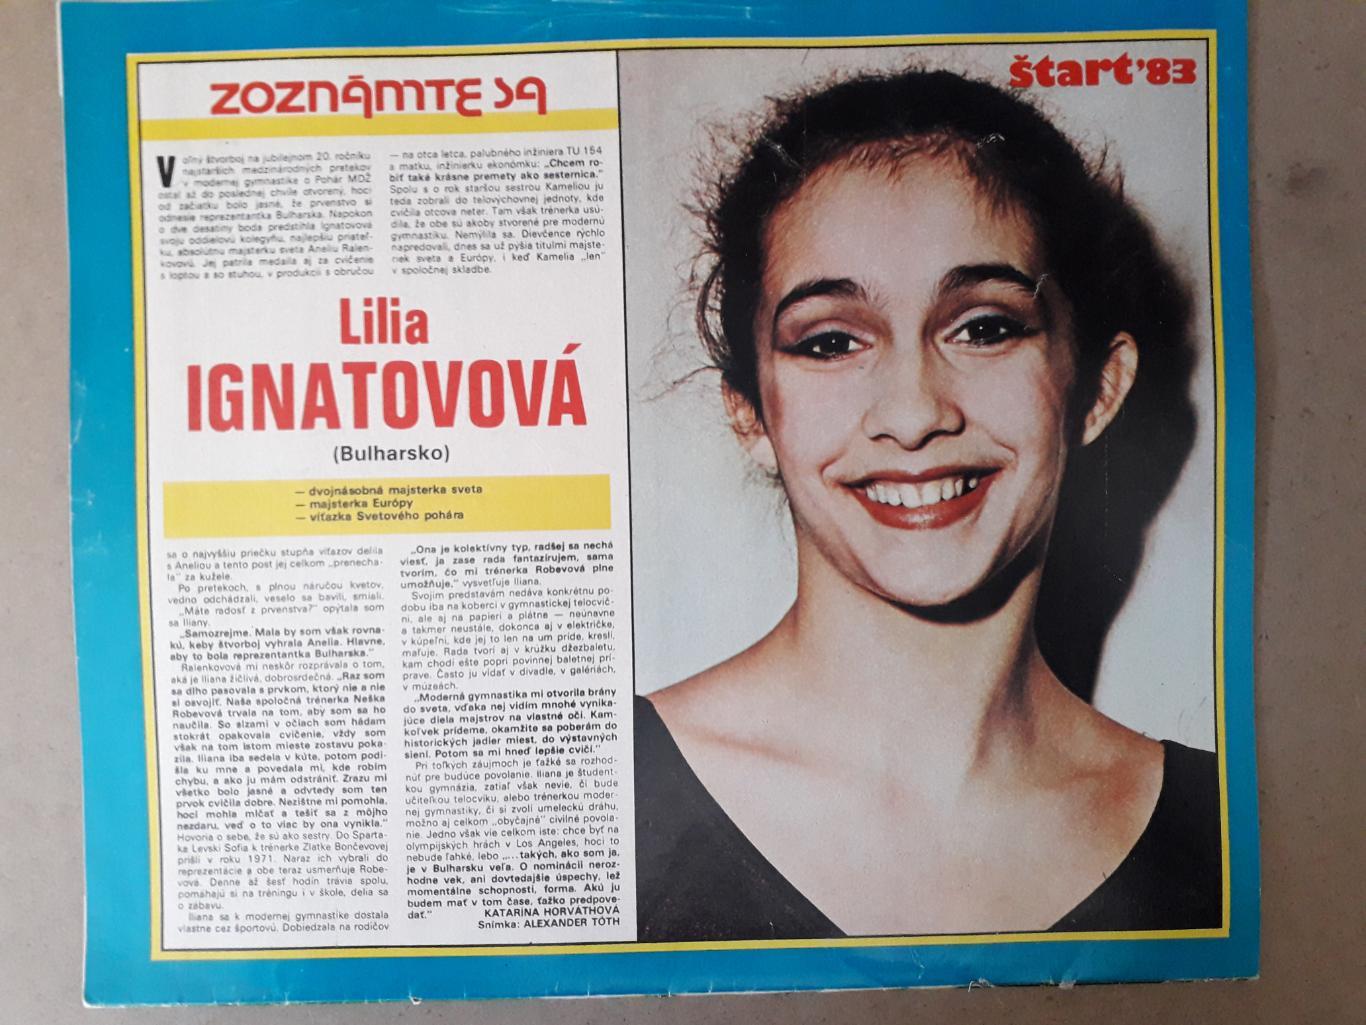 Журнал Start Nr. 26/1983 2